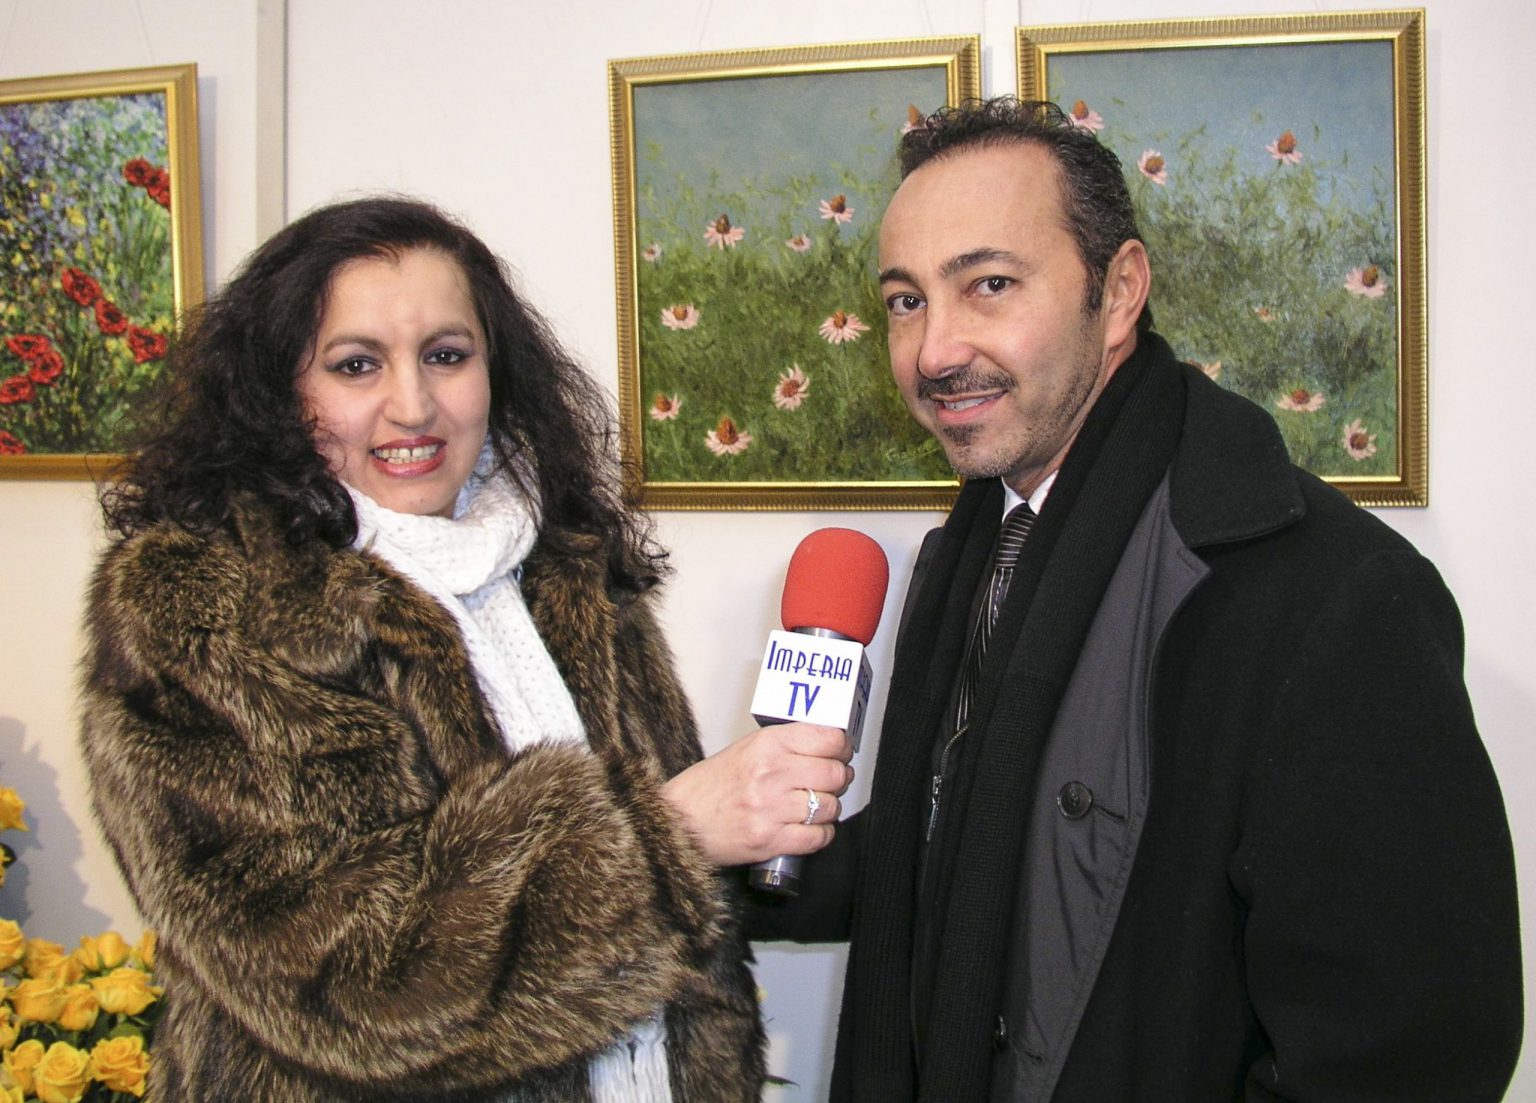 Interview médiatique d'Antoine Gaber à la télévision Imperia à propos de son exposition de peinture «Passion pour la vie» à Sanremo, Italie.